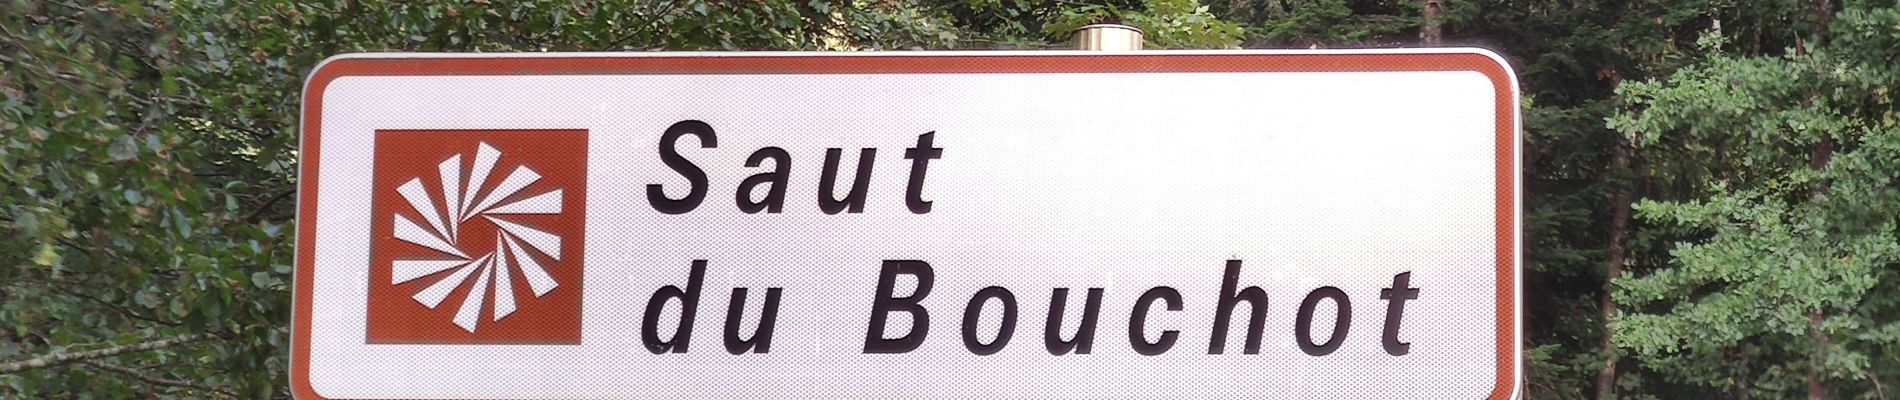 Punto de interés Gerbamont - Saut-du-Bouchot - Photo